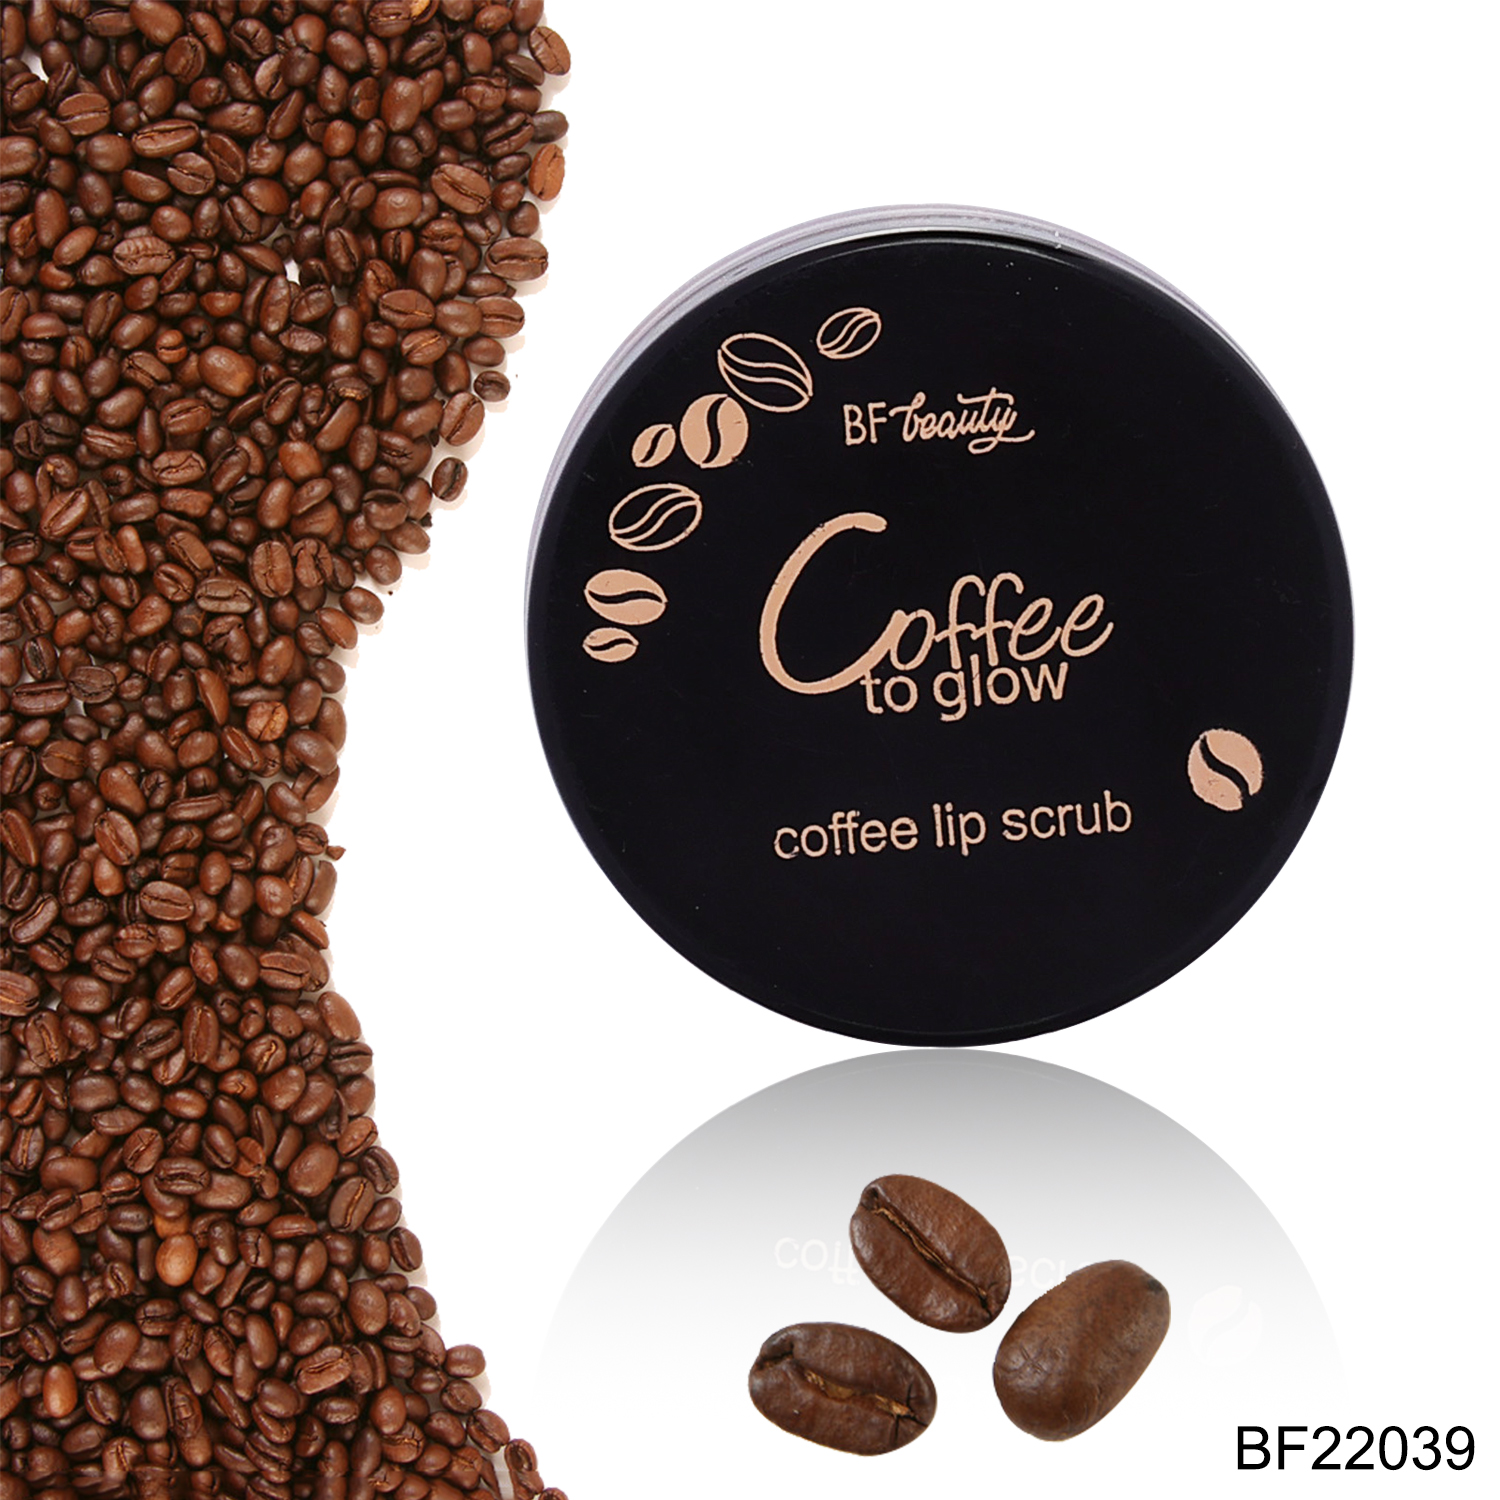 22039(2)Coffee to glow coffee lip scrub